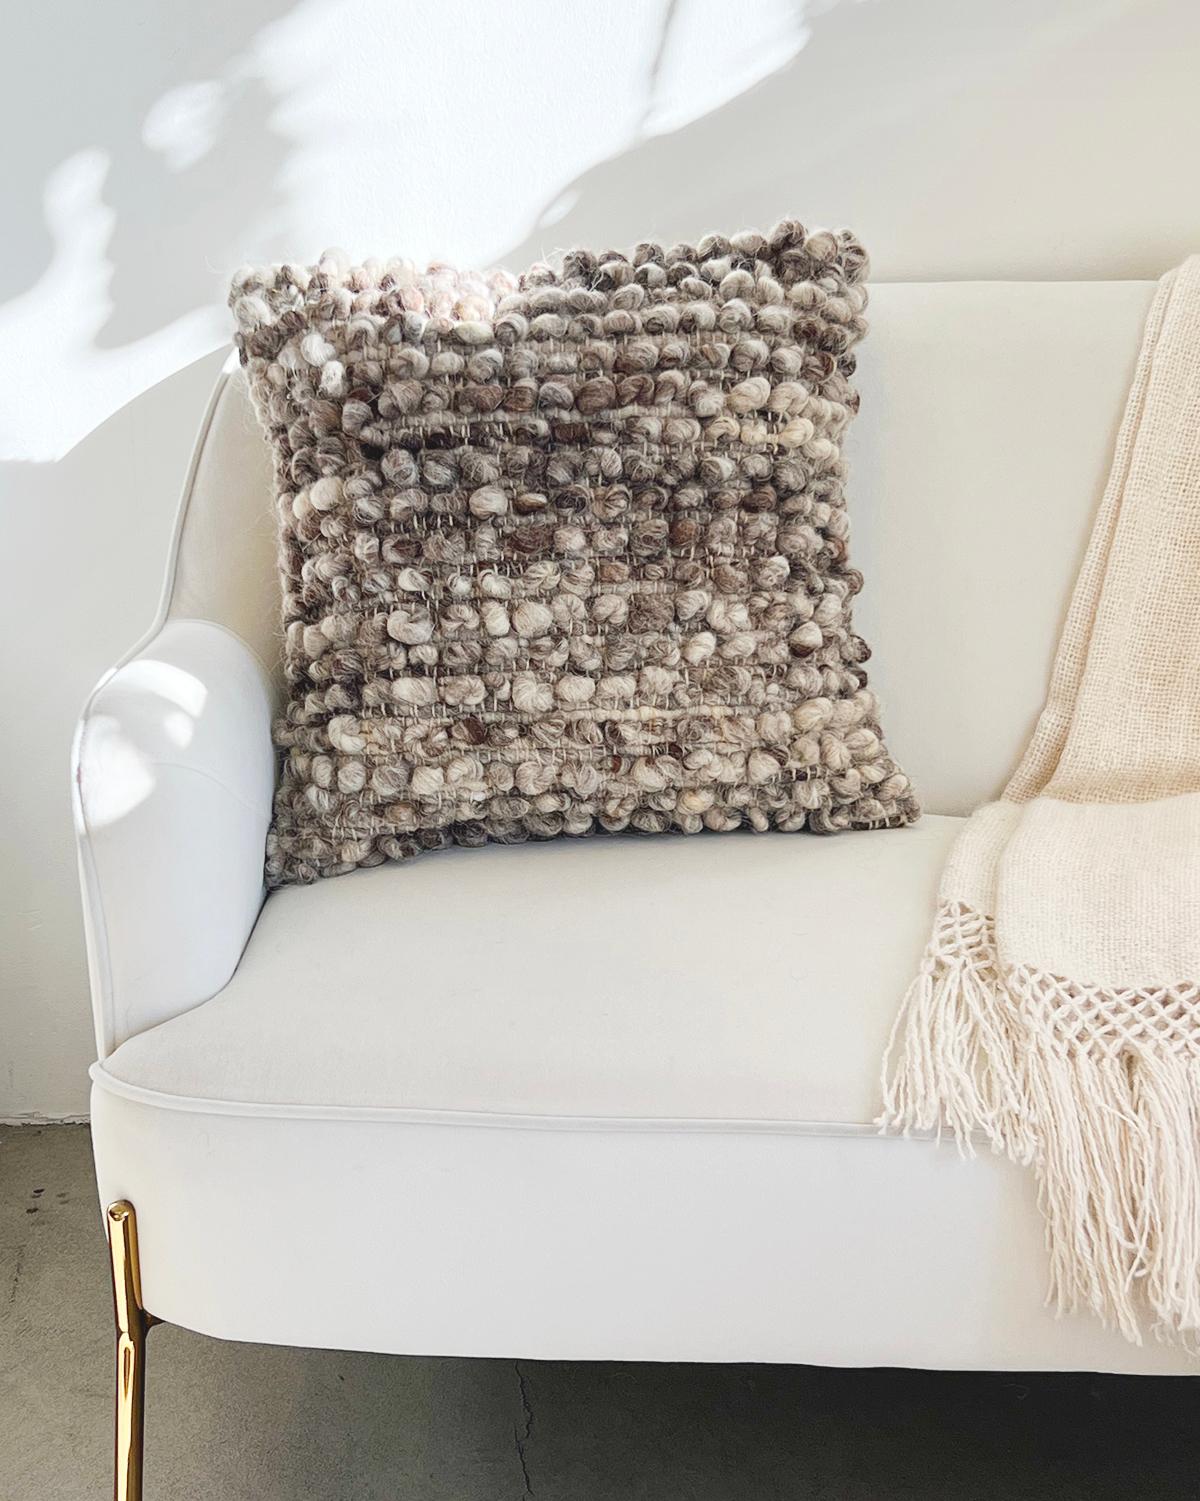 Un coussin texturé pour le canapé de votre salon. Ce coussin unique présente des rangées de boules en laine de mouton 100 % non teintée pour un aspect vraiment texturé et douillet. Ces coussins sont fabriqués à la main par Fatima au Portugal avec de